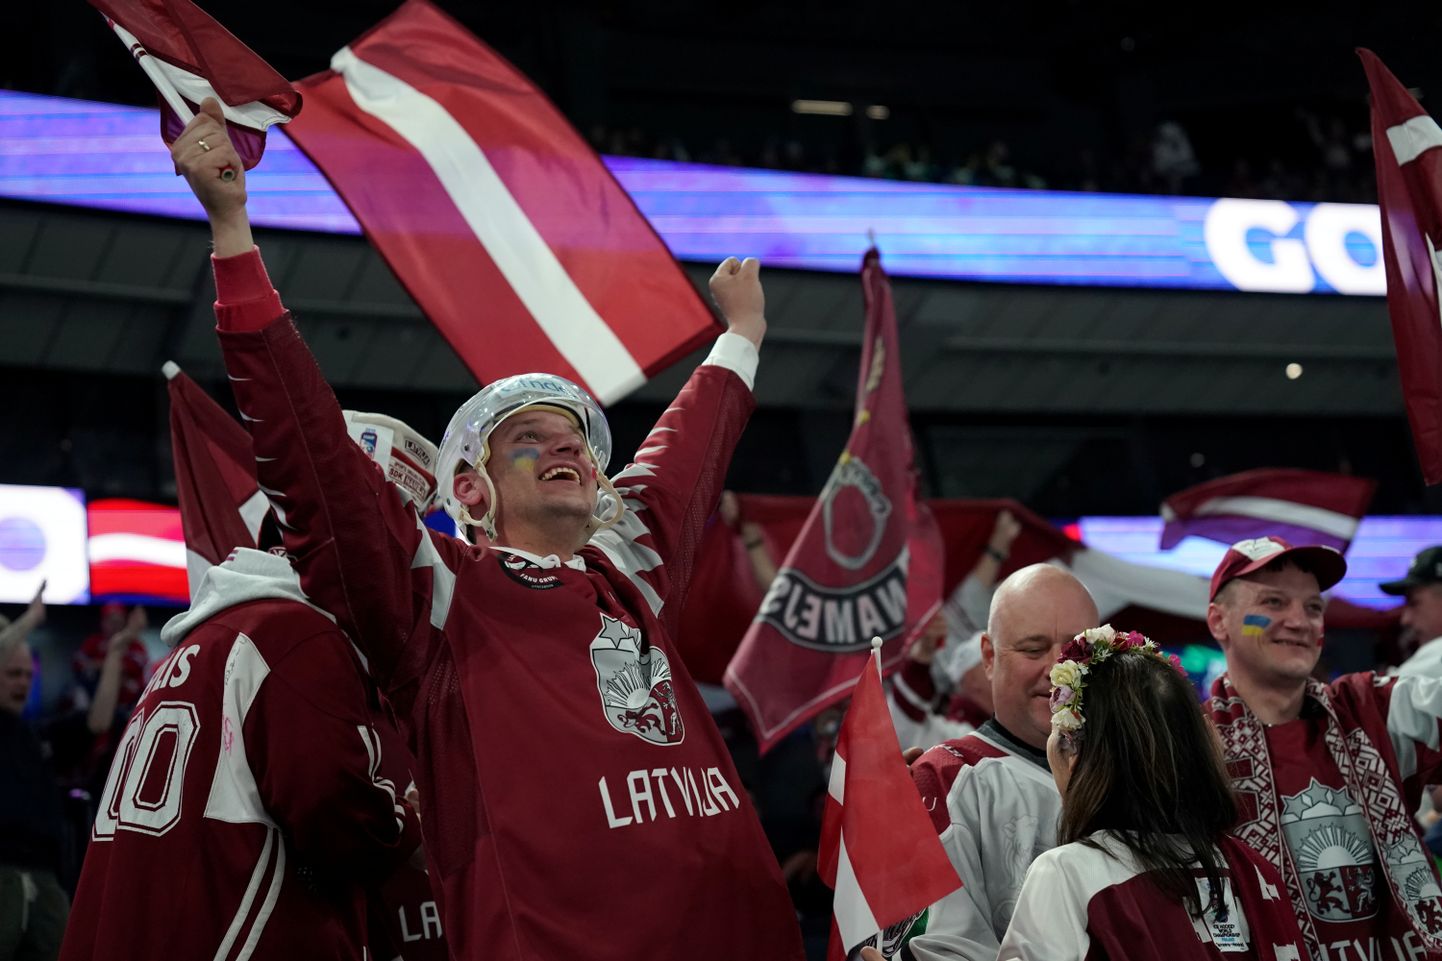 Latvijas hokeja izlases līdzjutēji